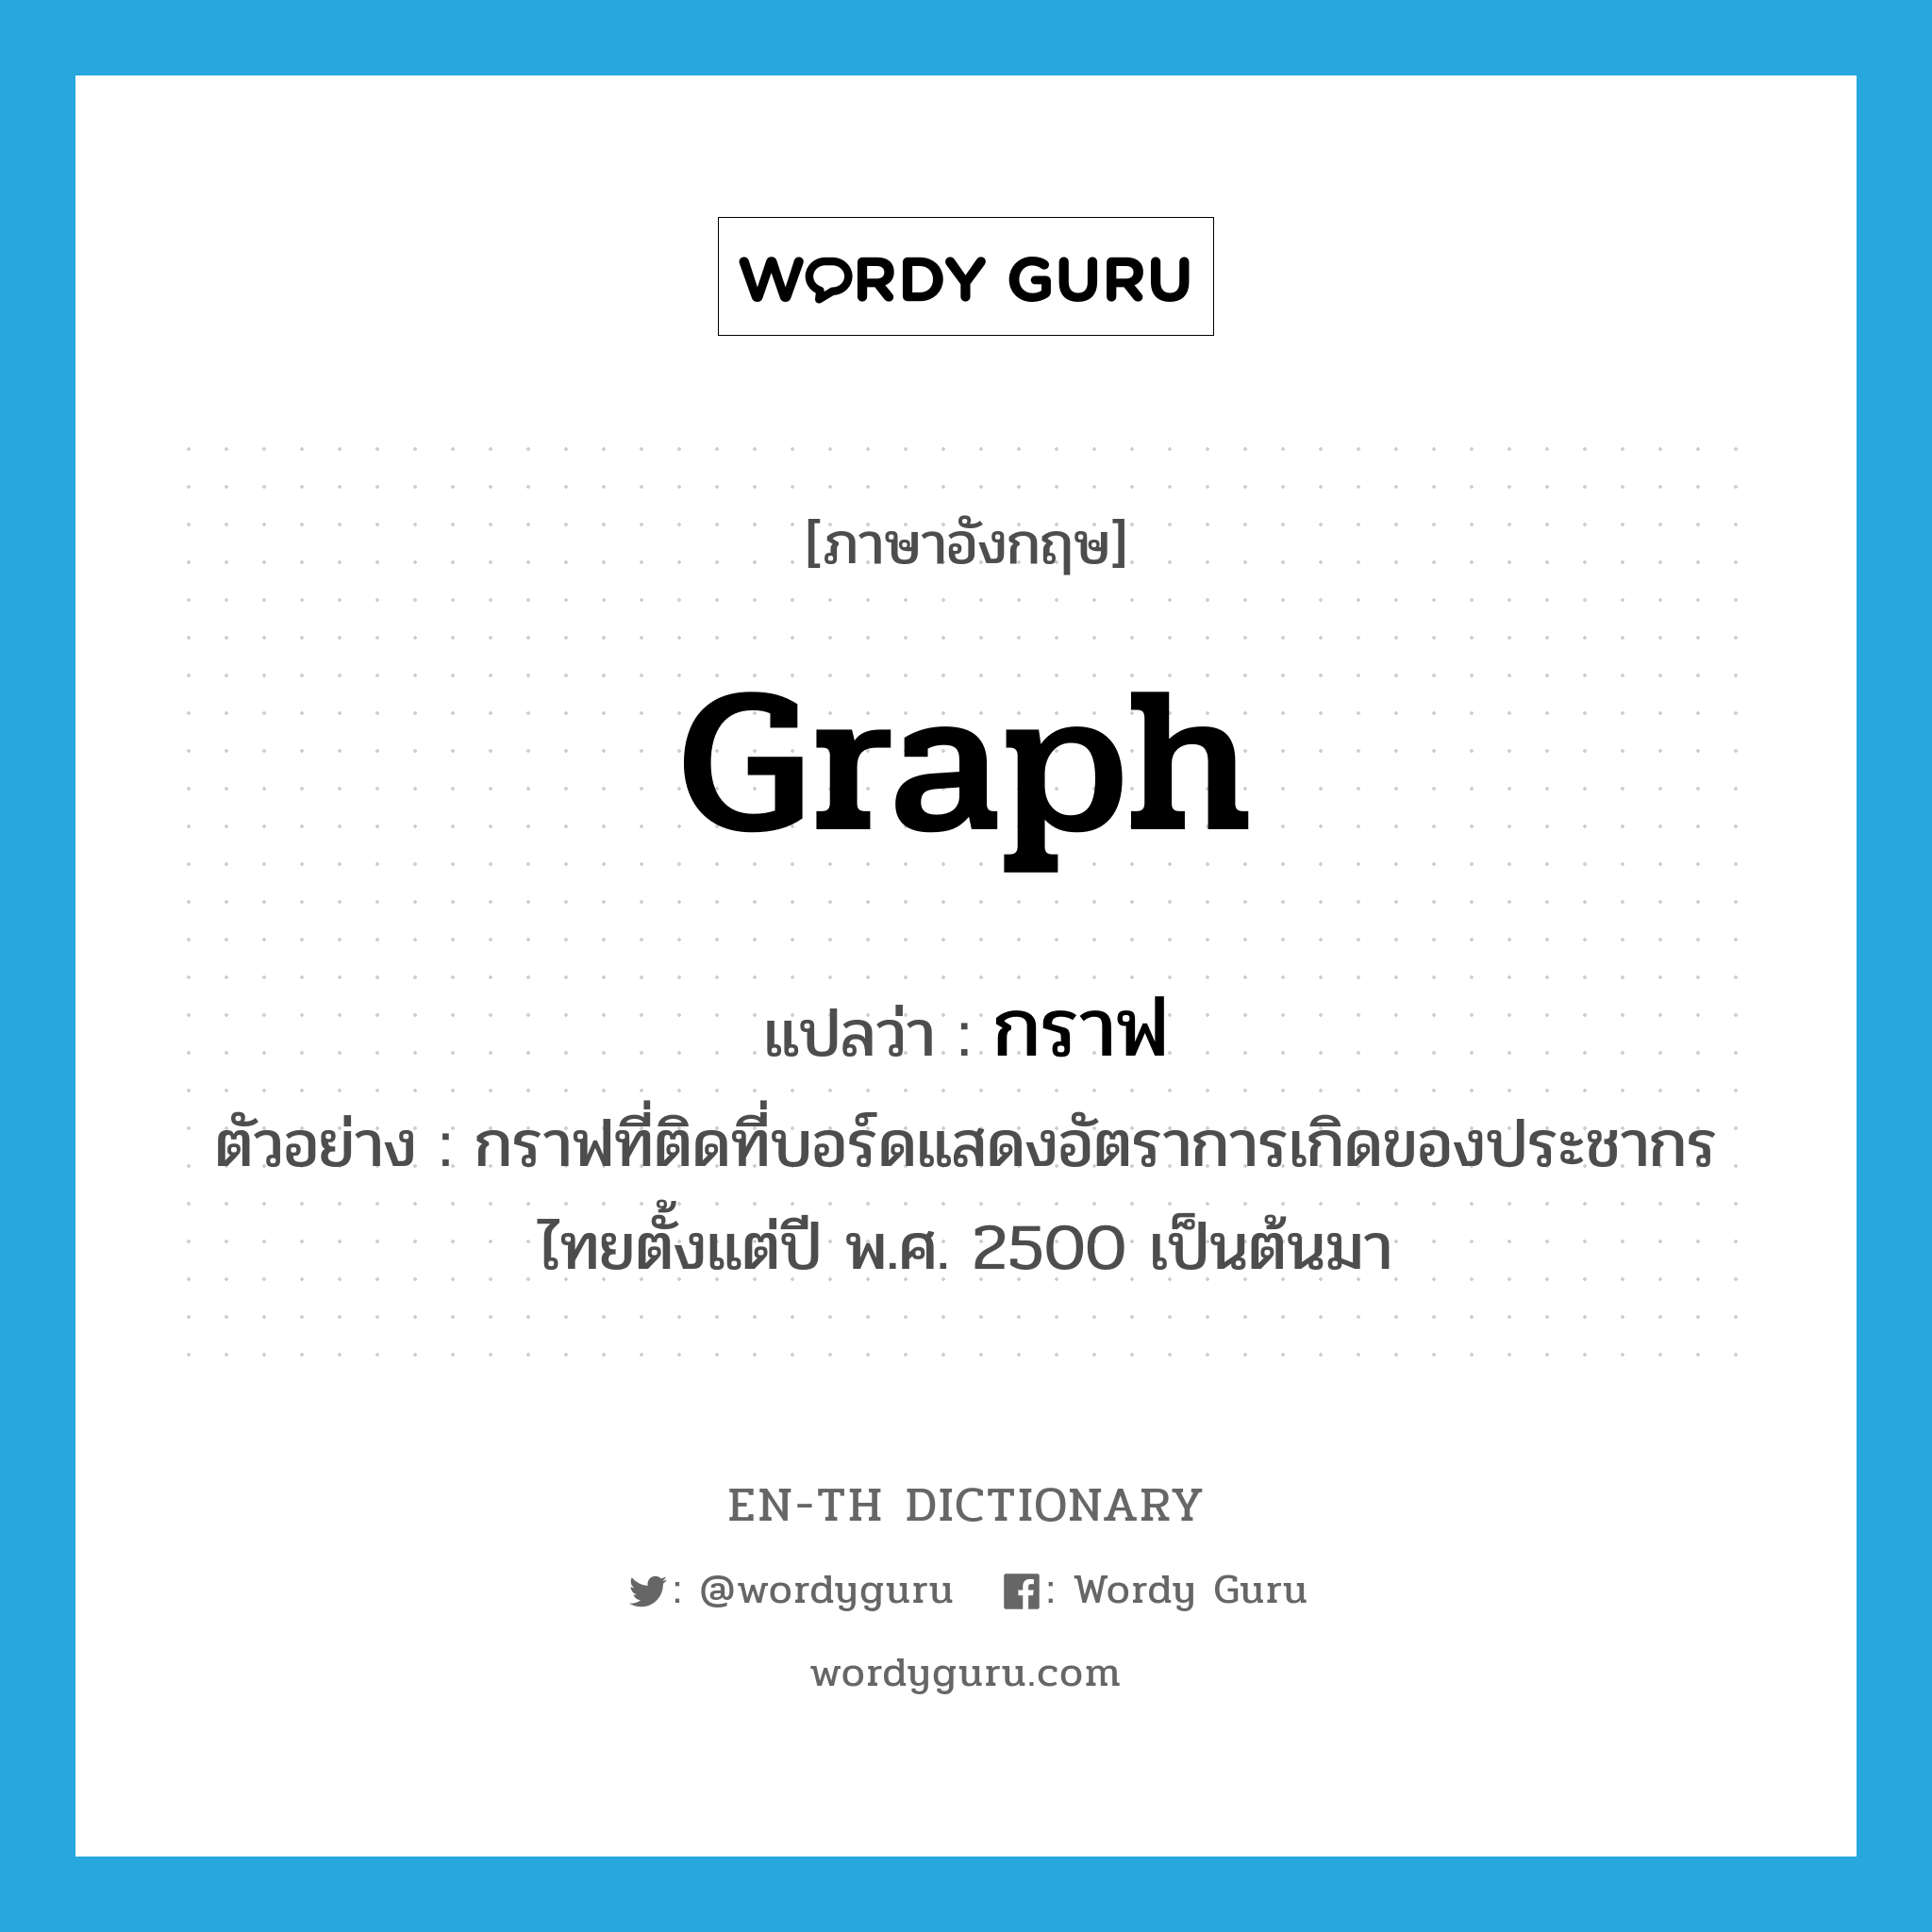 graph แปลว่า?, คำศัพท์ภาษาอังกฤษ graph แปลว่า กราฟ ประเภท N ตัวอย่าง กราฟที่ติดที่บอร์ดแสดงอัตราการเกิดของประชากรไทยตั้งแต่ปี พ.ศ. 2500 เป็นต้นมา หมวด N